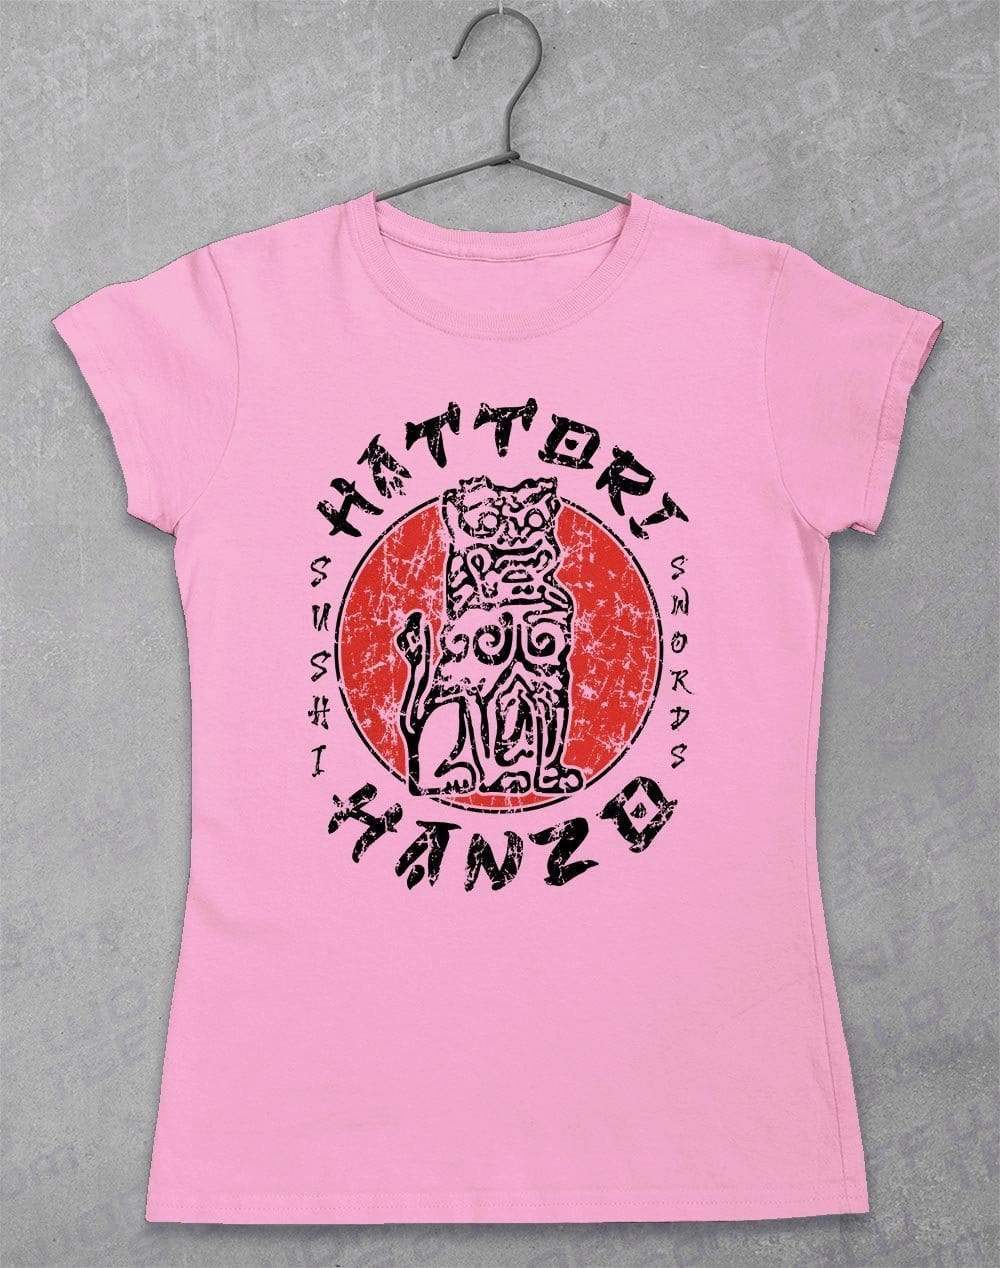 Hattori Hanzo Women's T-Shirt 8-10 / Light Pink  - Off World Tees